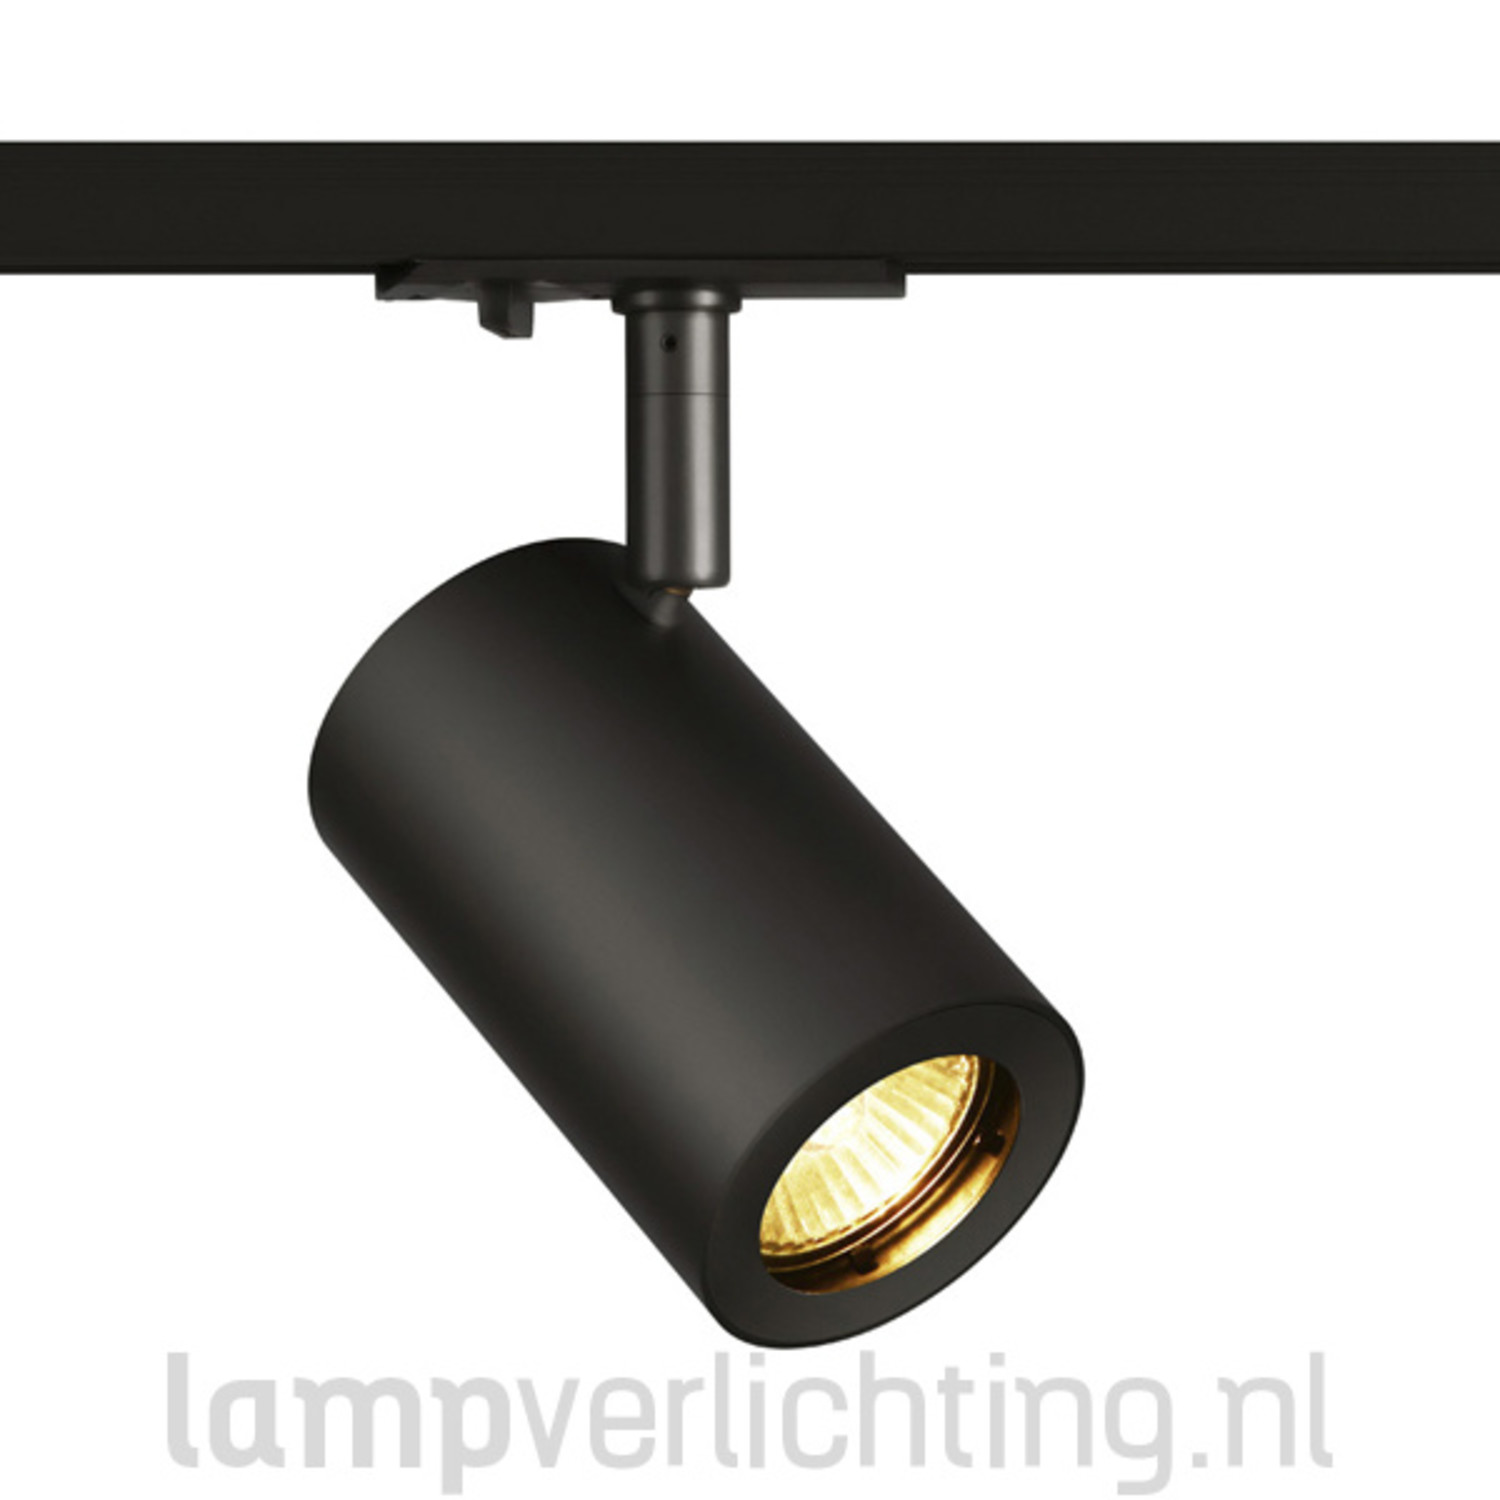 Monopoly Numeriek visie Railspot GU10 Cilinder 1-Fase - Spot voor 1-Fase Rail - Smart optie -  LampVerlichting.nl